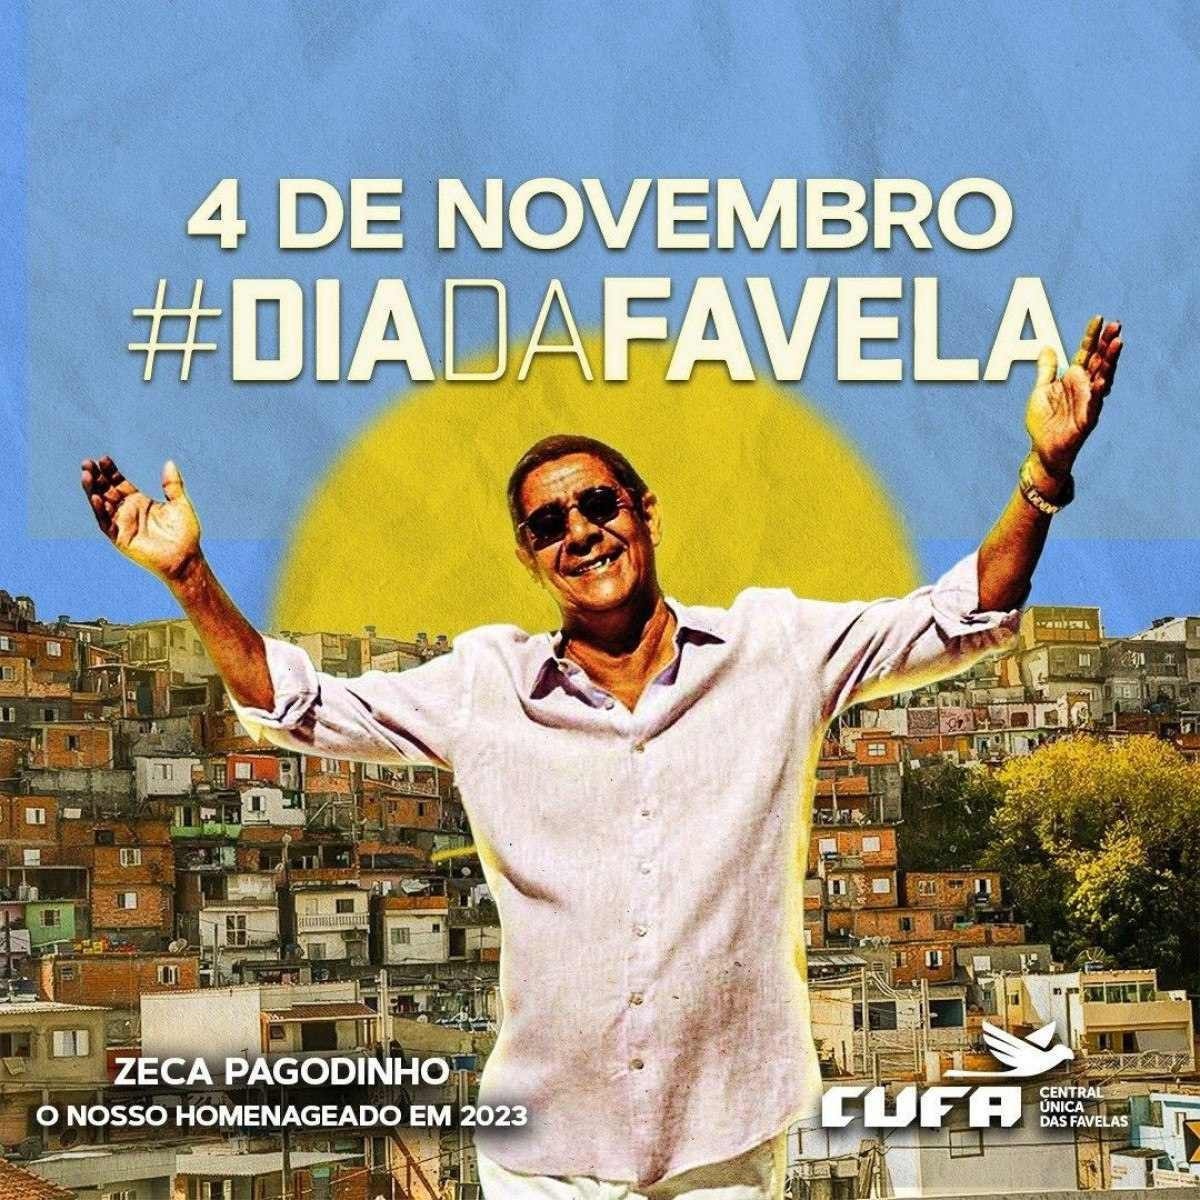 No Dia da Favela, CUFA promove grande evento com homenagem a Zeca Pagodinho